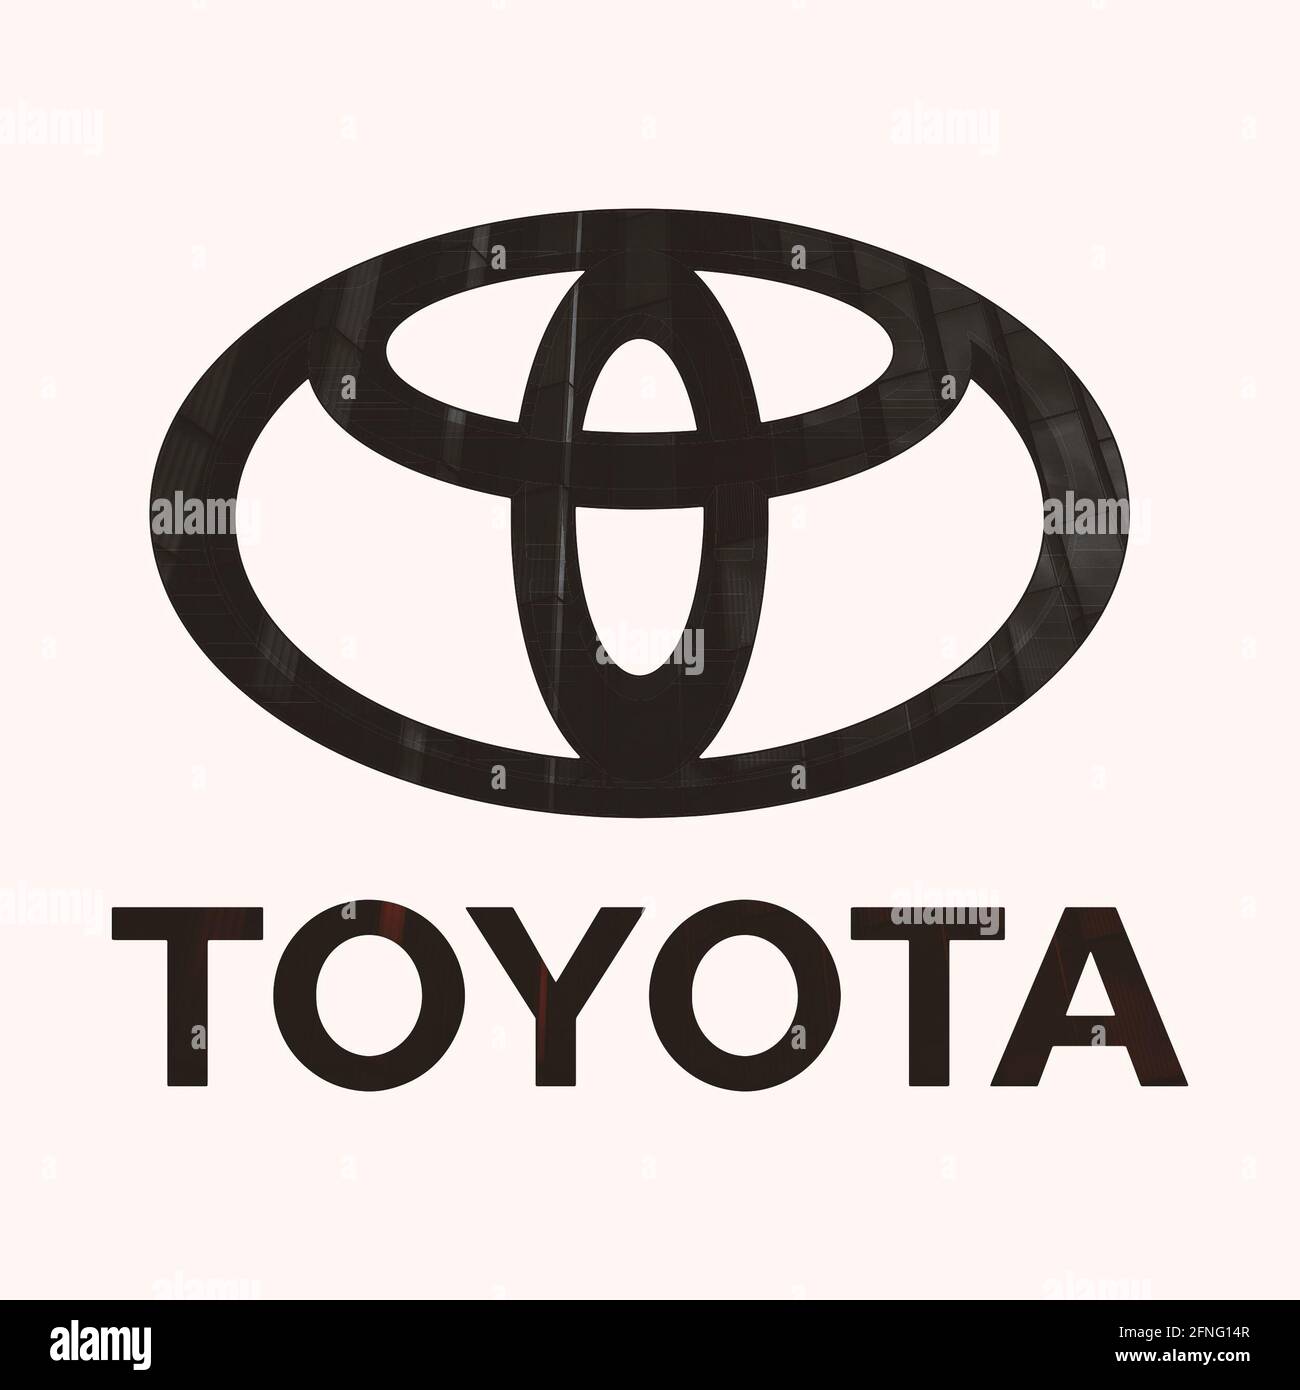 toyota logo Stock Photo